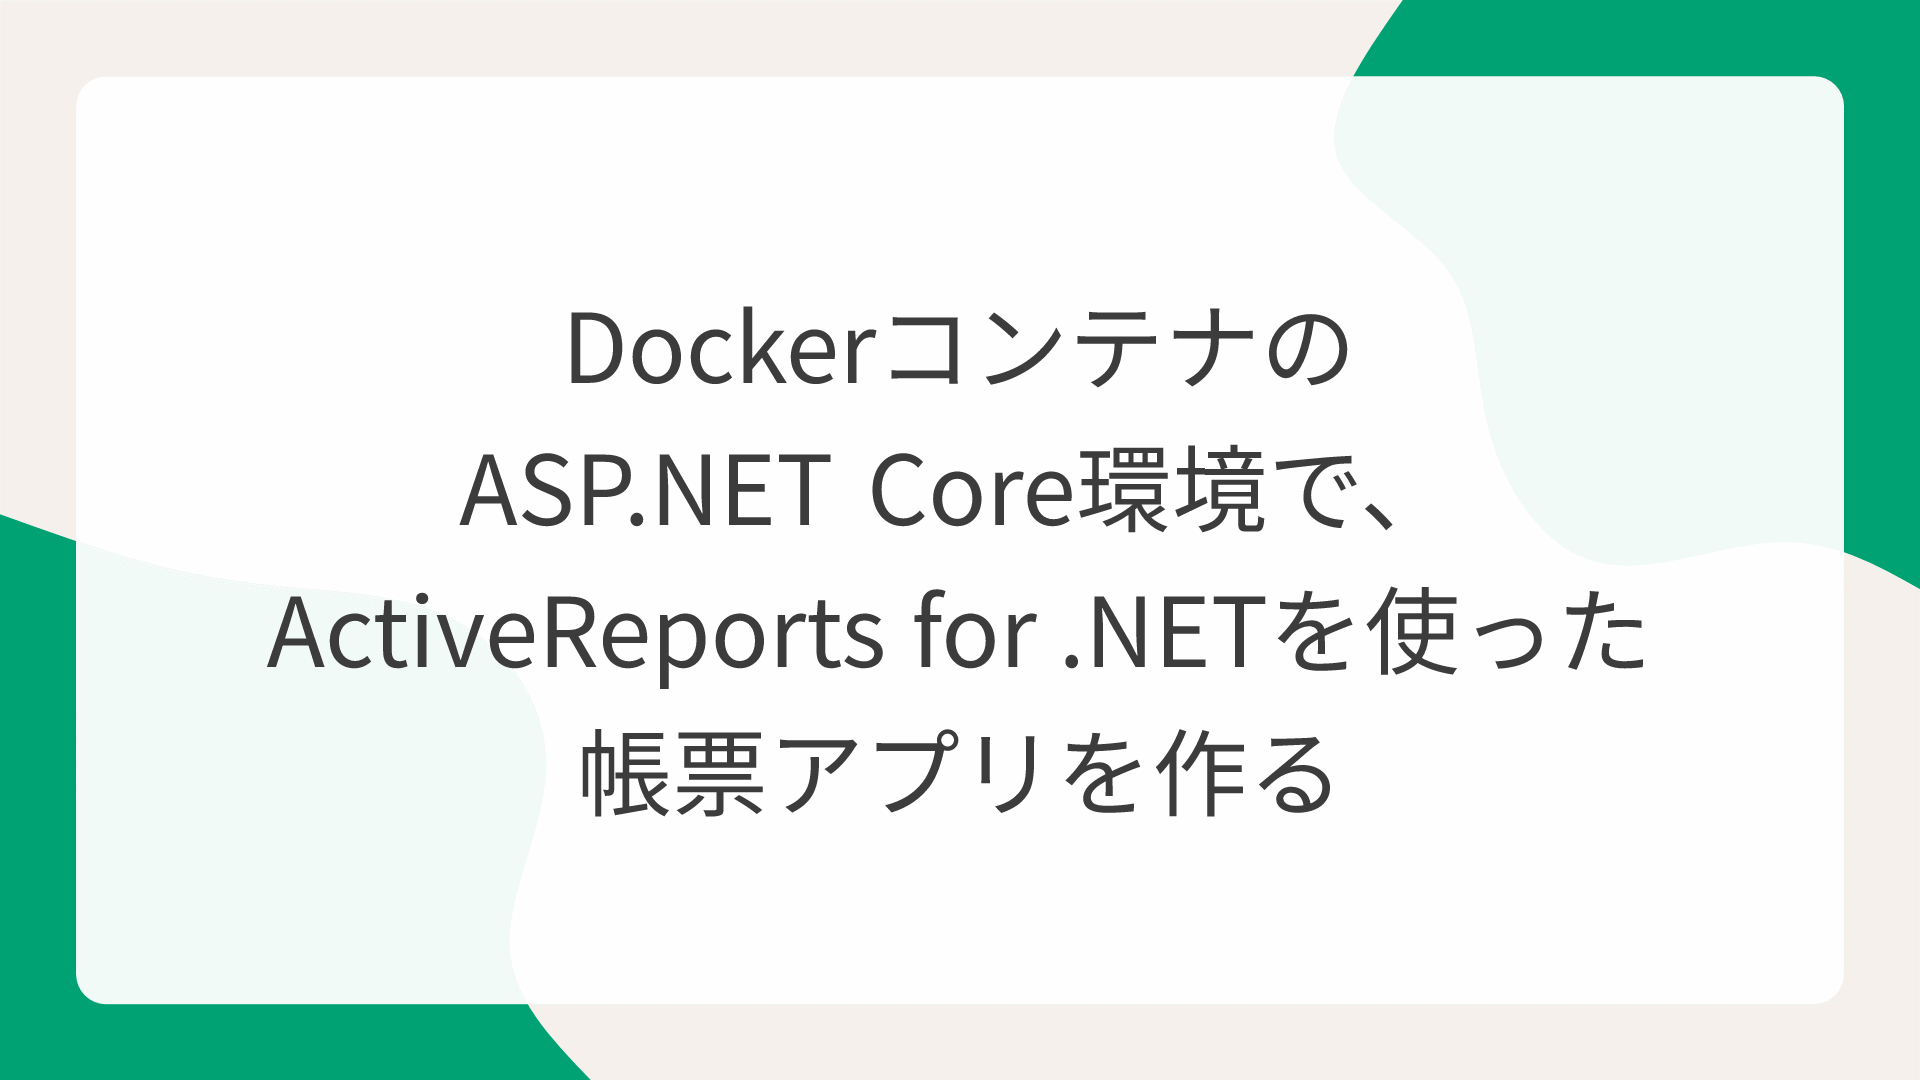 DockerコンテナのASP.NET Core環境で、ActiveReports for .NETを使った帳票アプリを作る